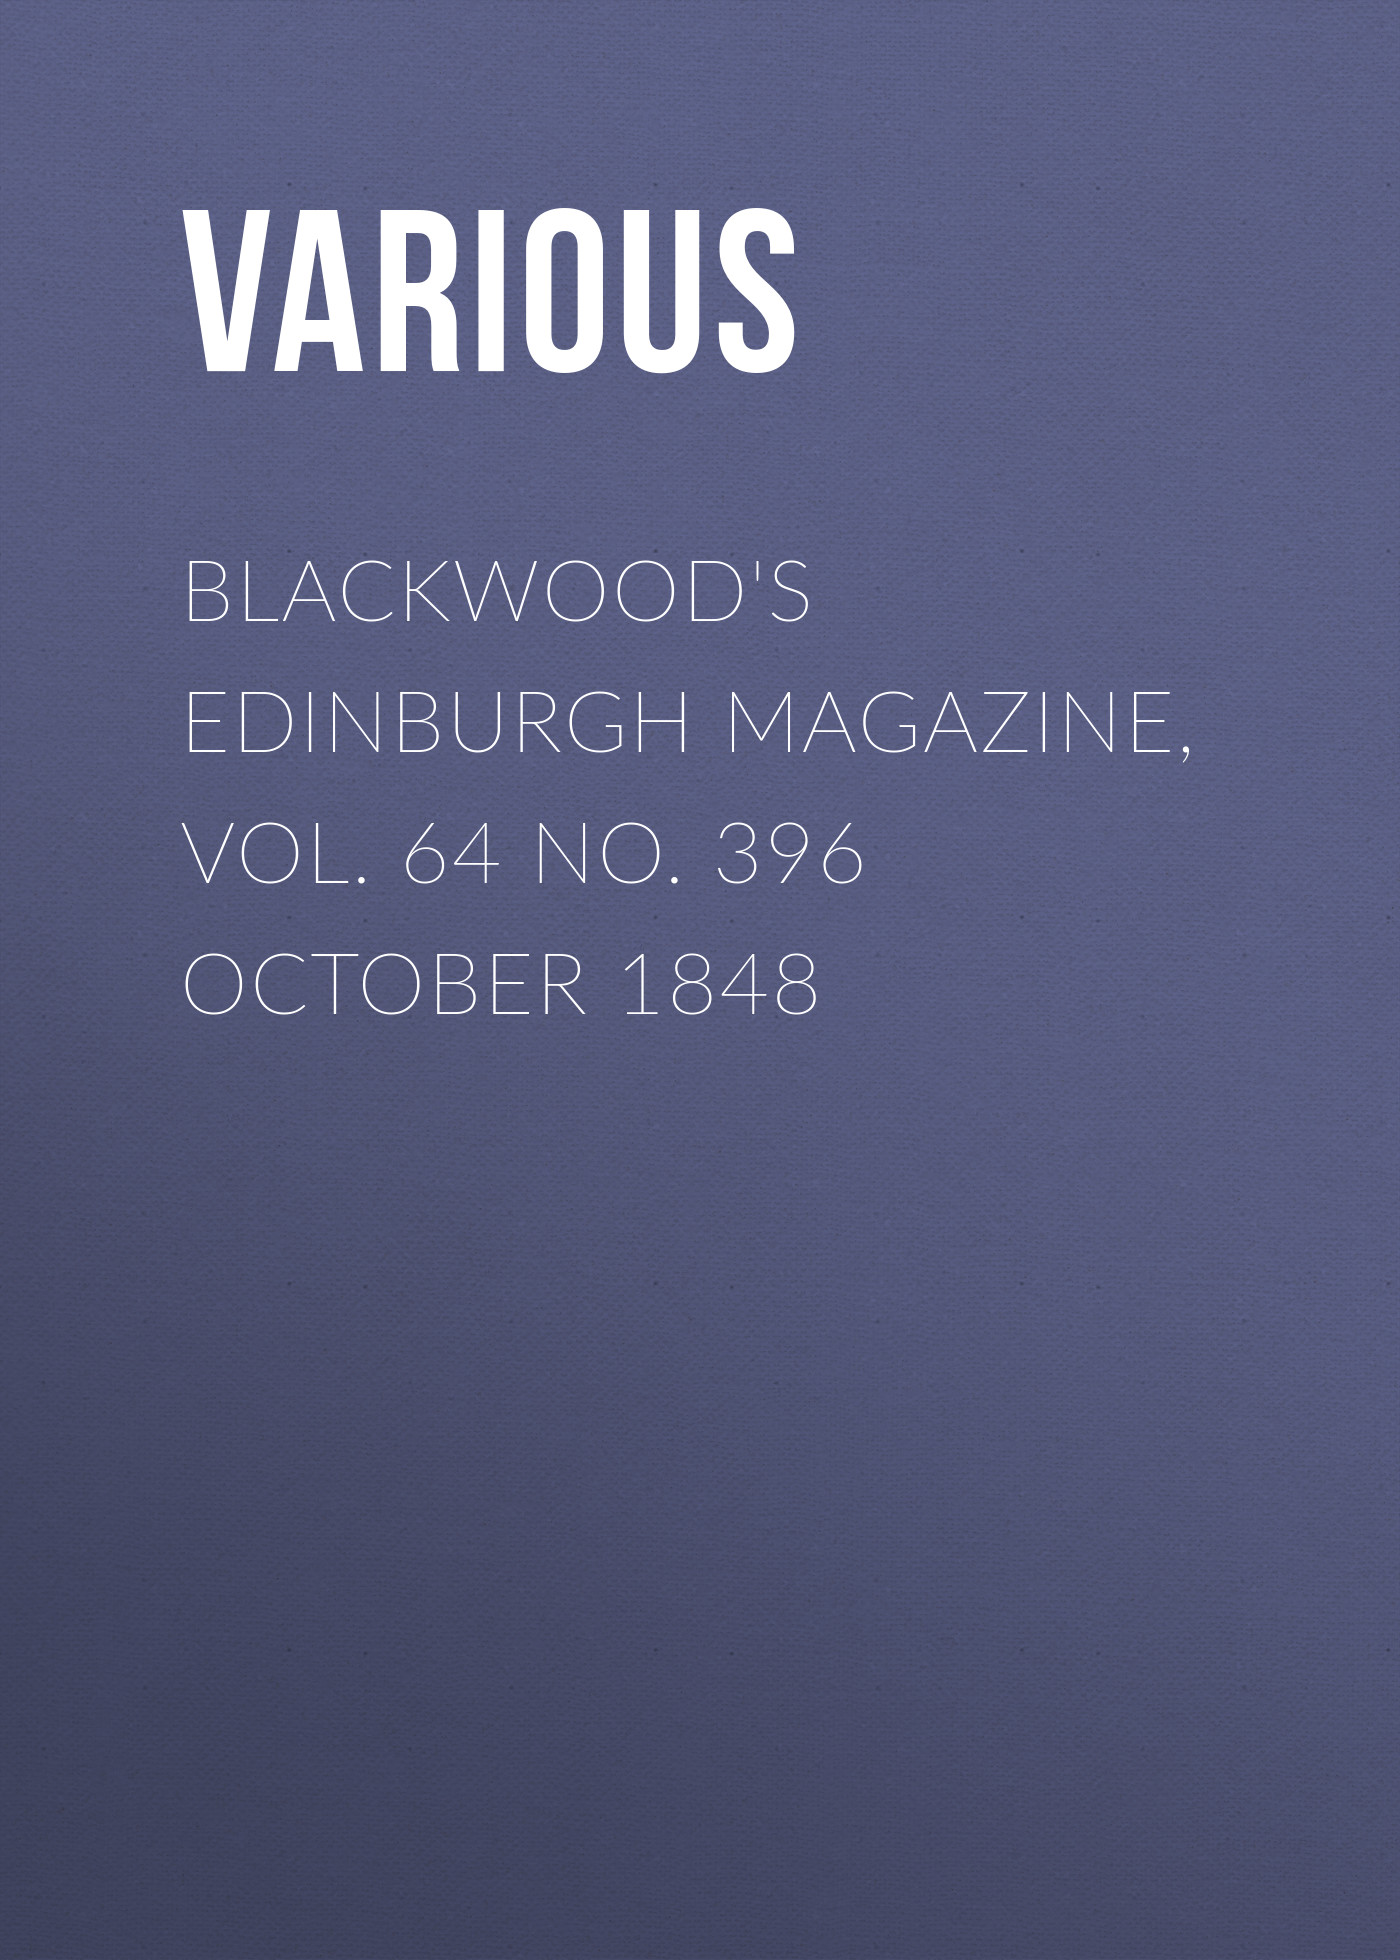 Книга Blackwood's Edinburgh Magazine, Vol. 64 No. 396 October 1848 из серии , созданная  Various, может относится к жанру Журналы, Зарубежная образовательная литература, Книги о Путешествиях. Стоимость электронной книги Blackwood's Edinburgh Magazine, Vol. 64 No. 396 October 1848 с идентификатором 25569367 составляет 0 руб.